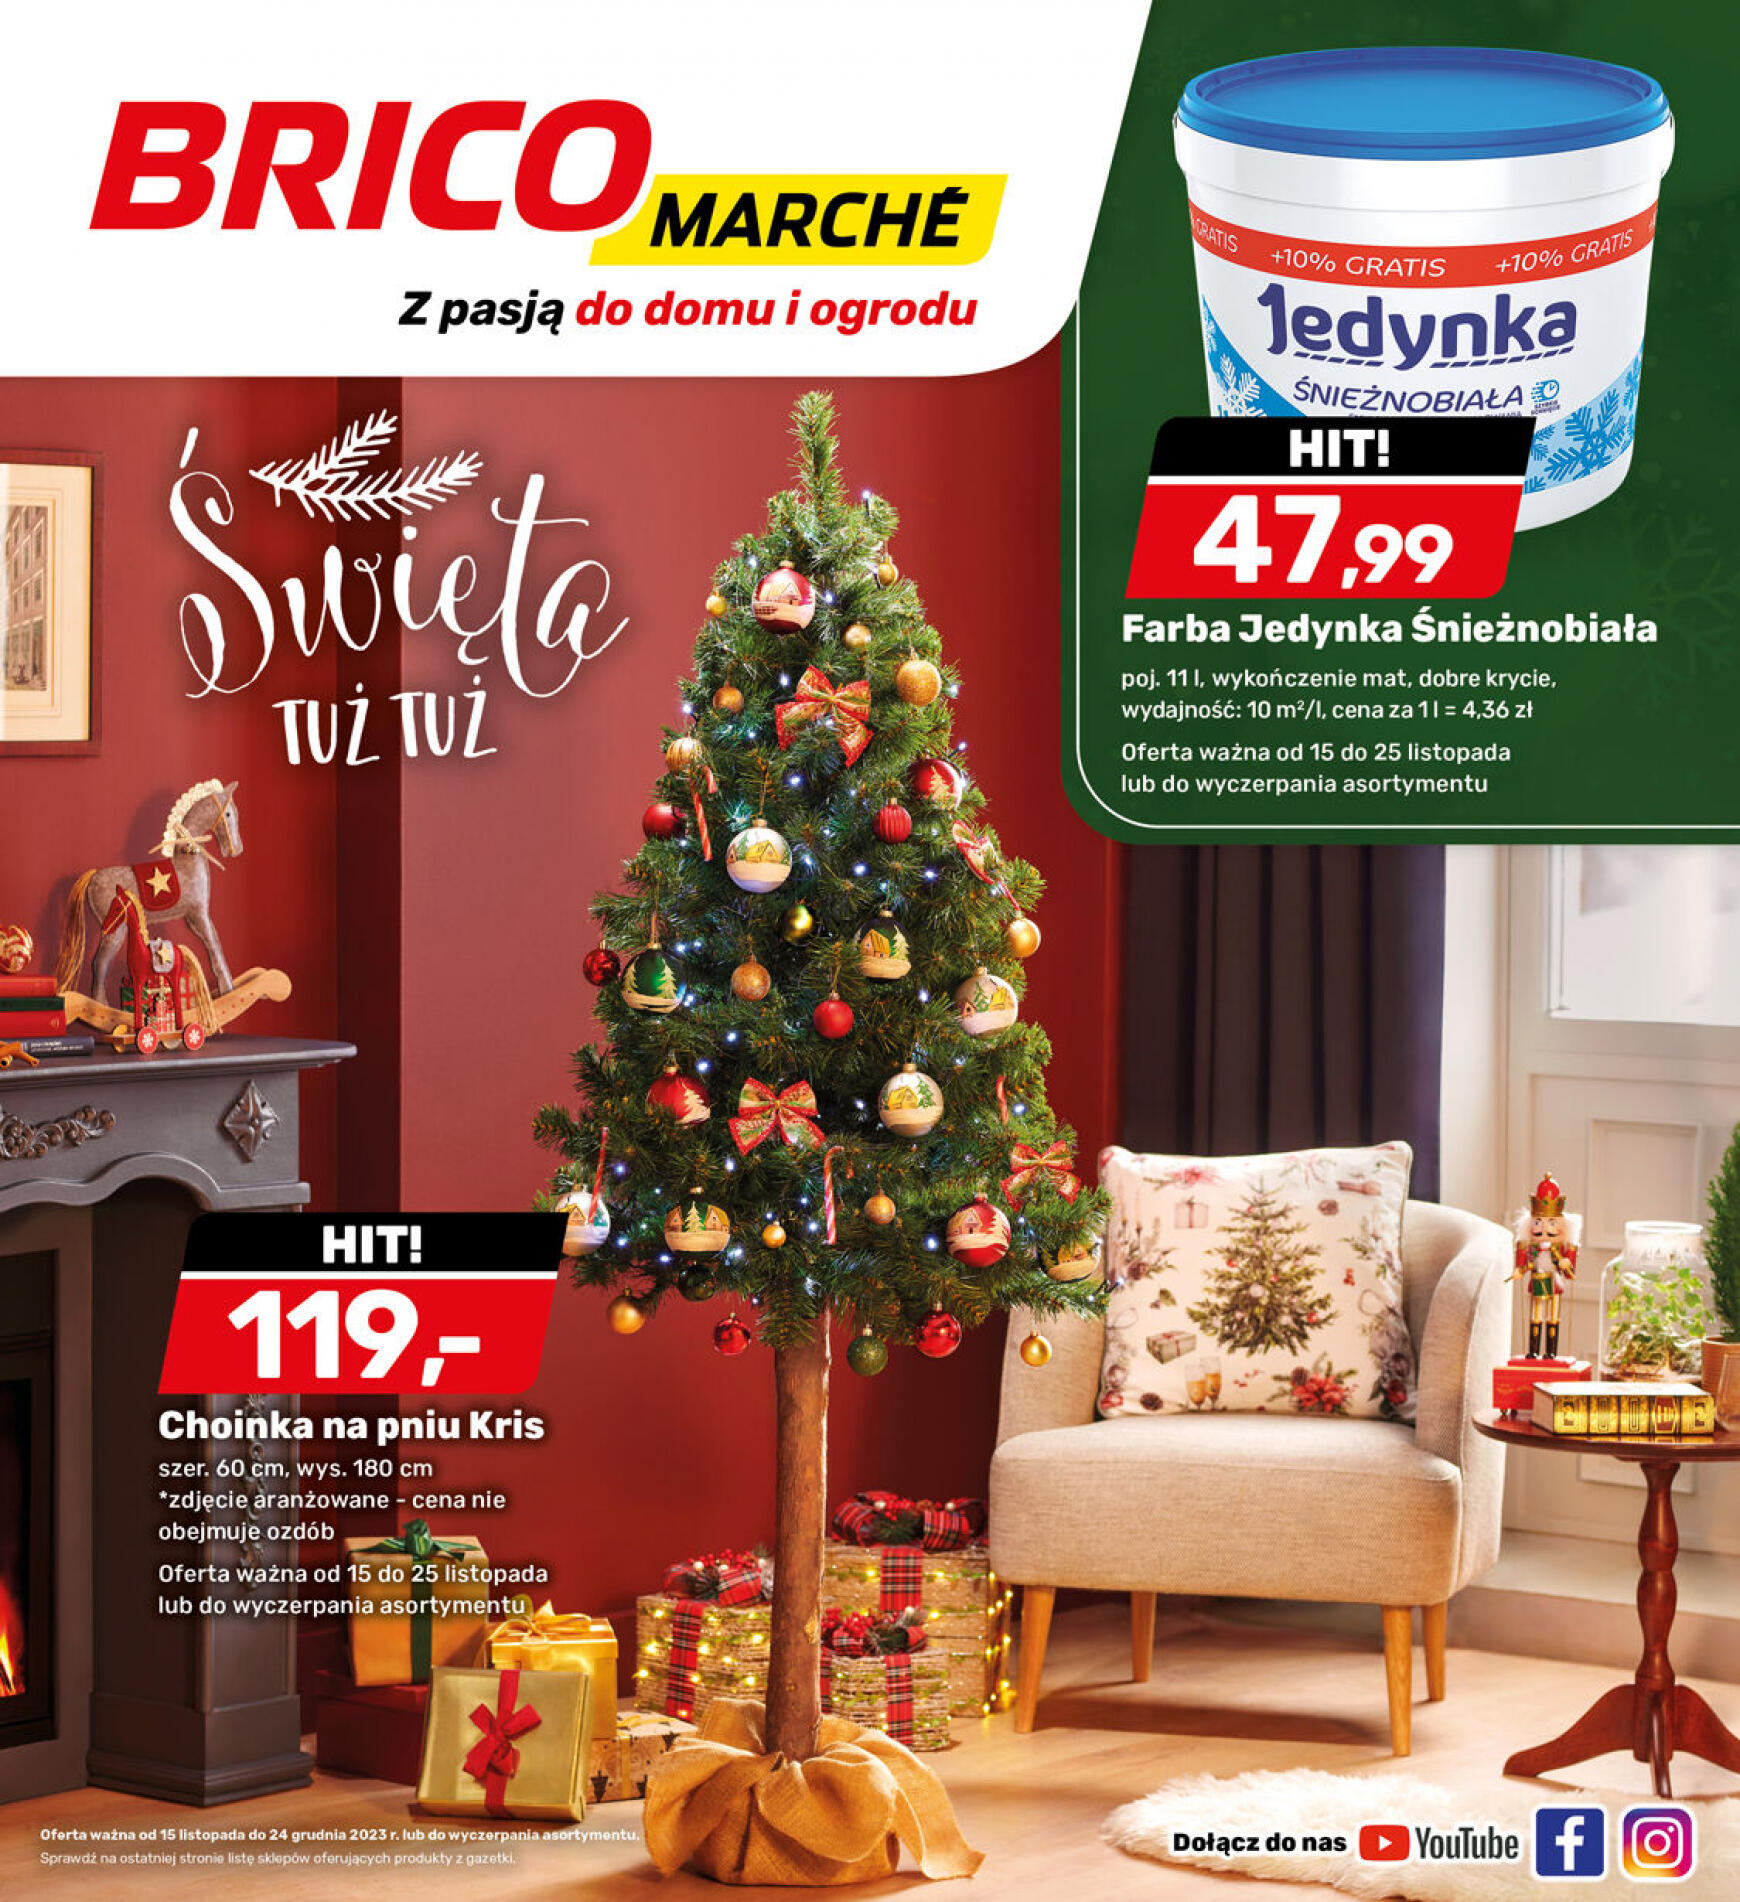 brico-marche - - Bricomarche - page: 6